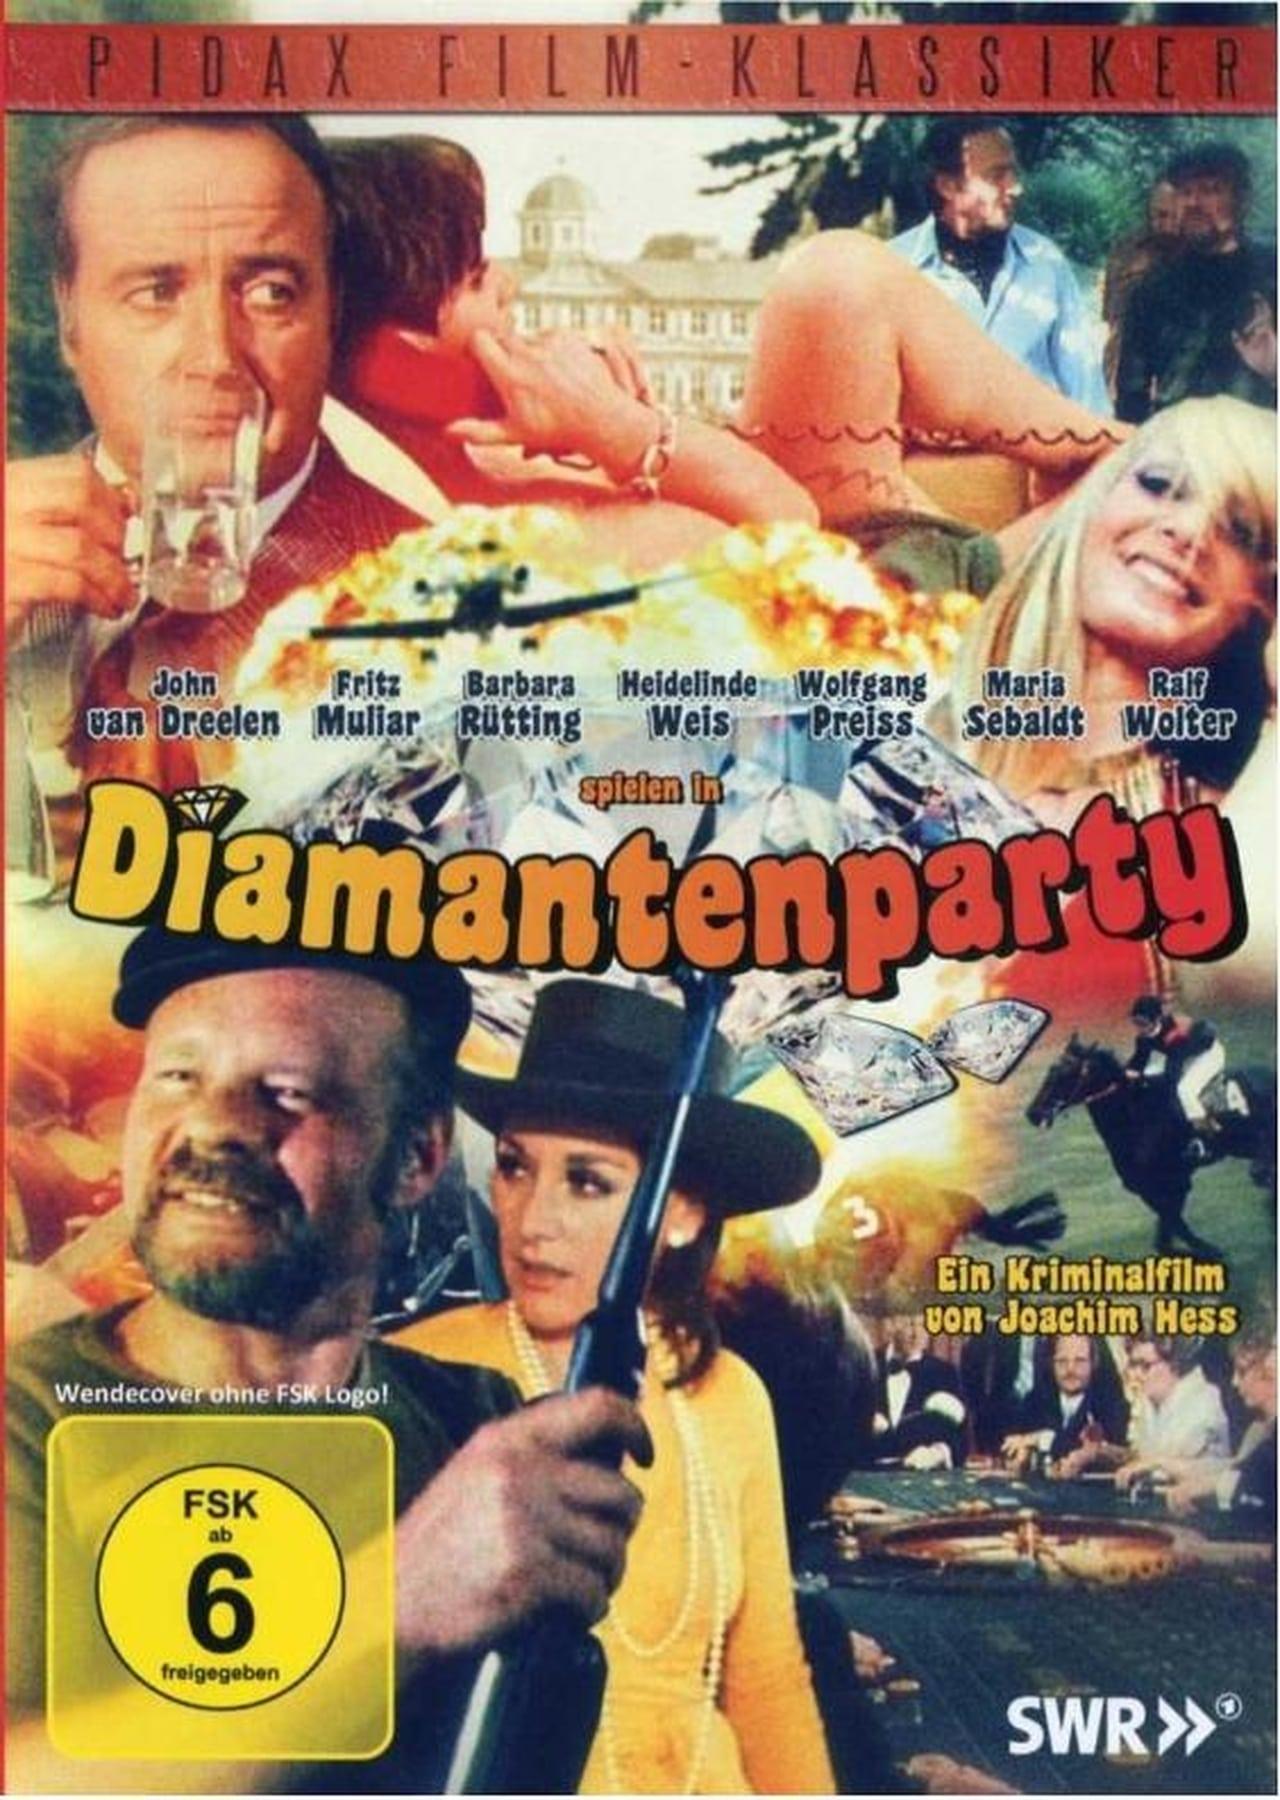 Diamantenparty poster